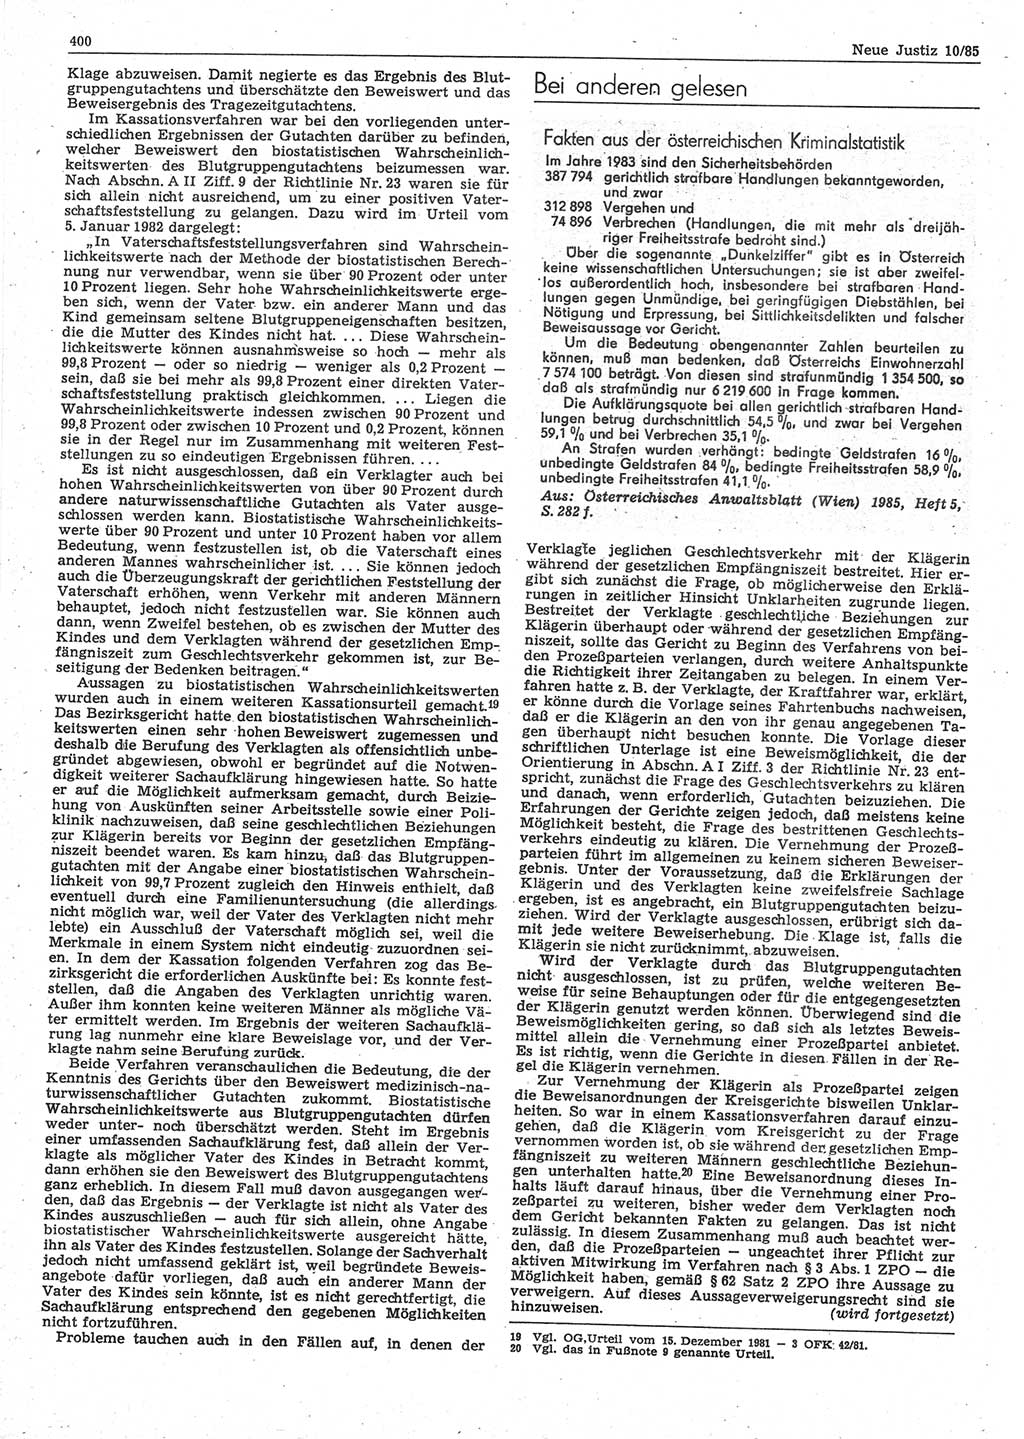 Neue Justiz (NJ), Zeitschrift für sozialistisches Recht und Gesetzlichkeit [Deutsche Demokratische Republik (DDR)], 39. Jahrgang 1985, Seite 400 (NJ DDR 1985, S. 400)